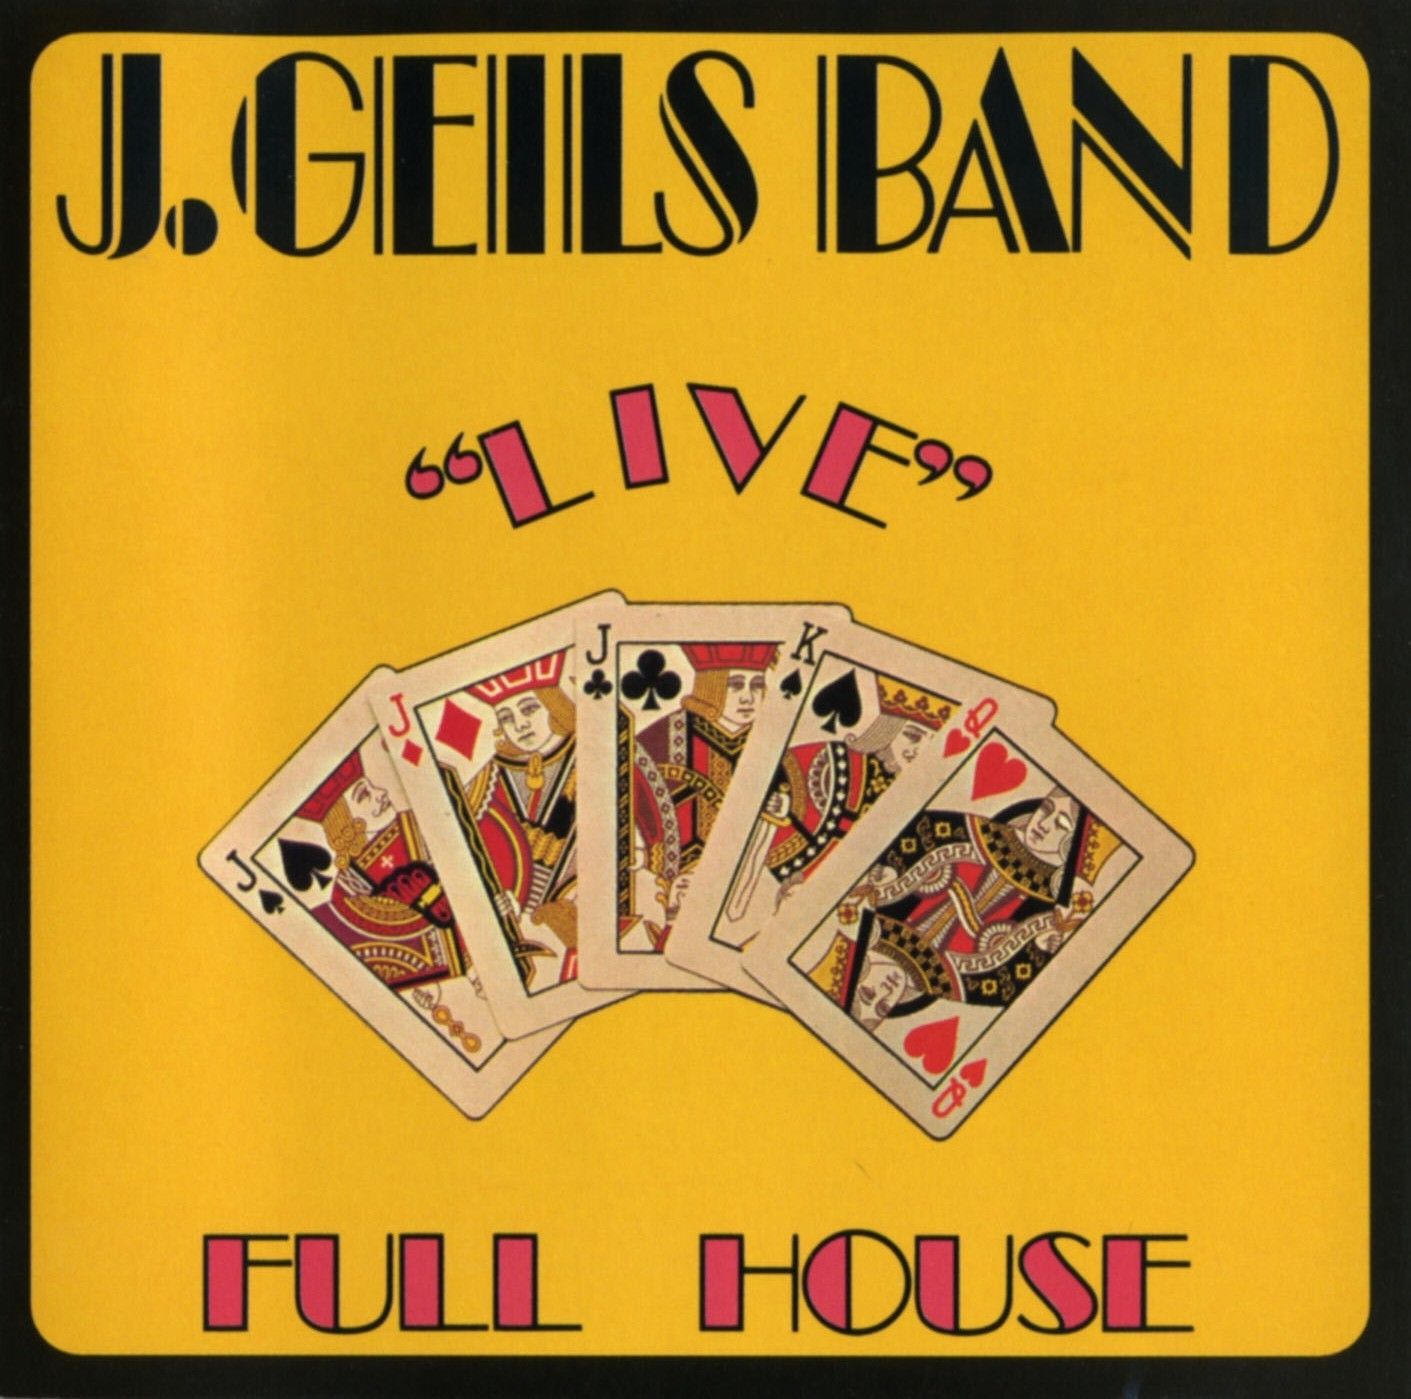 Imagem do álbum  Live Full House do(a) artista J. Geils Band